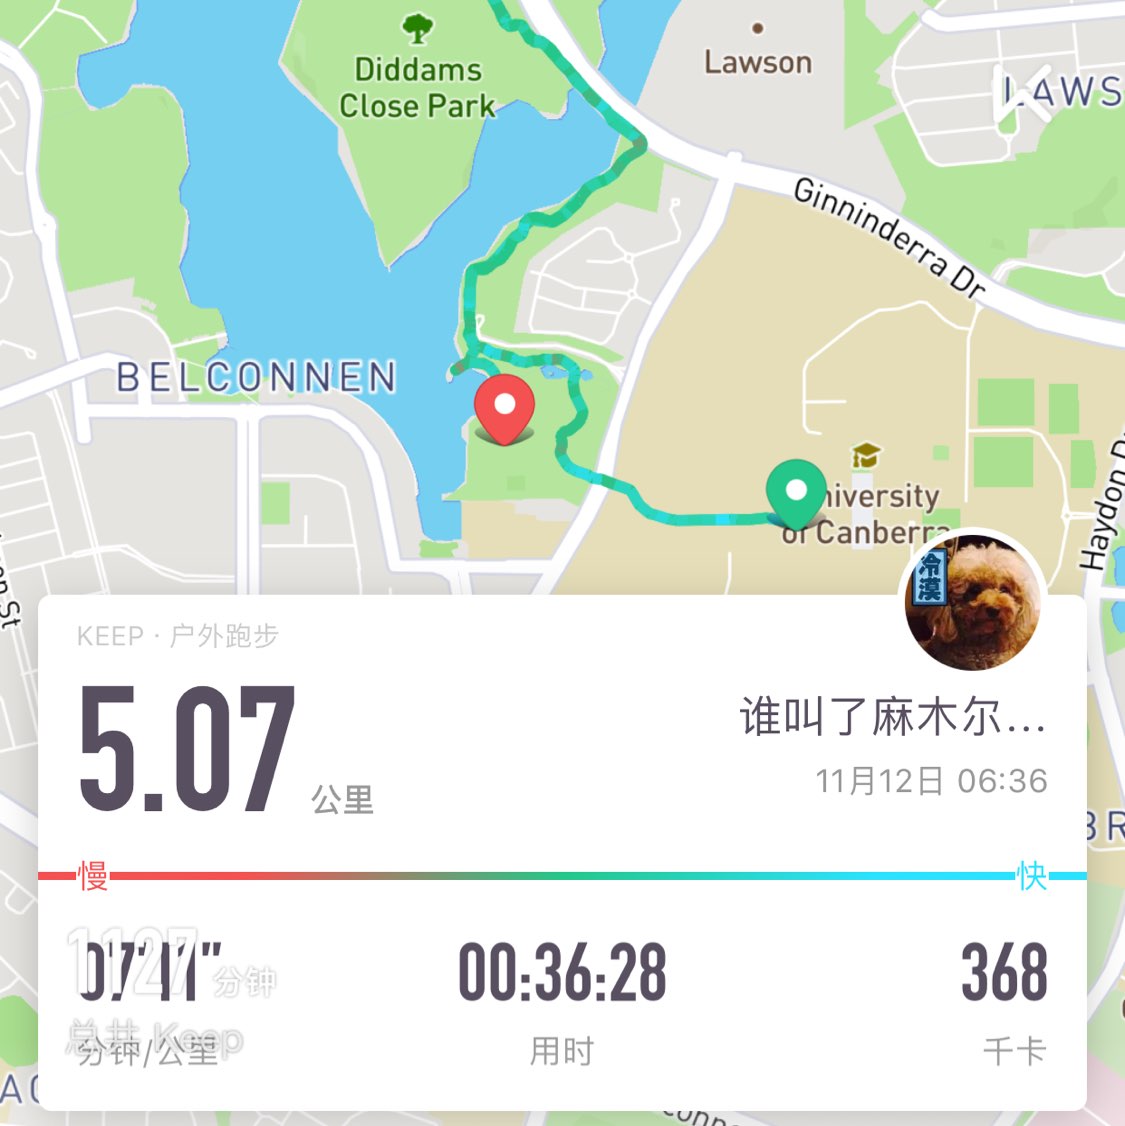 我刚刚完成了5.07公里跑步,加入我一起运动吧!